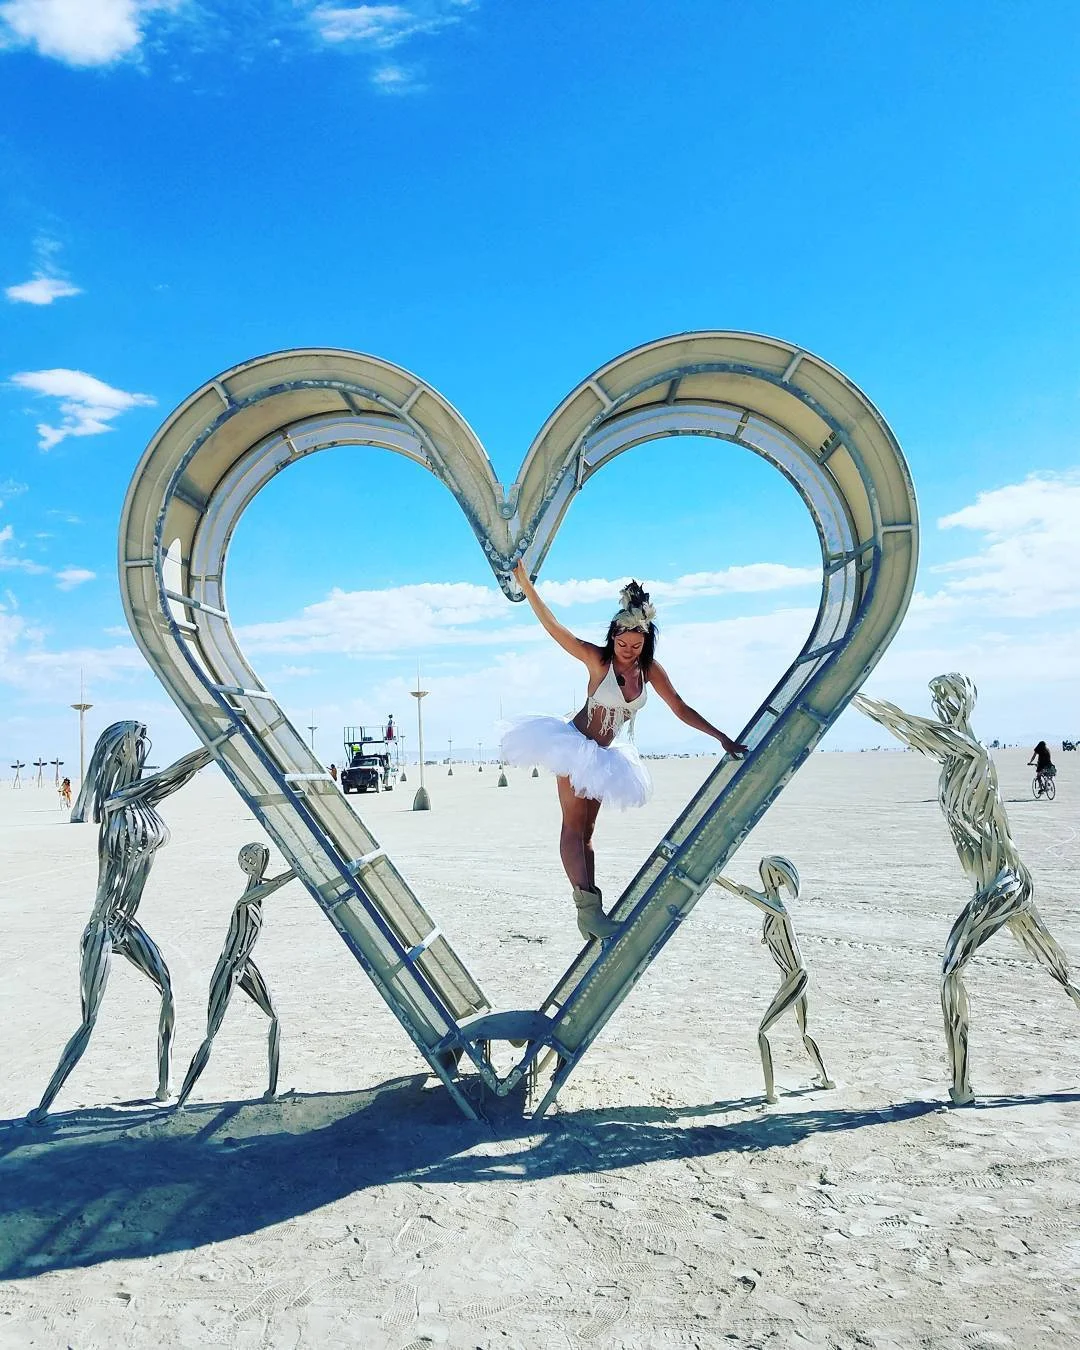 Пыль, голые тела и современное искусство: крутые фото с фестиваля Burning Man 2017 - фото 336423